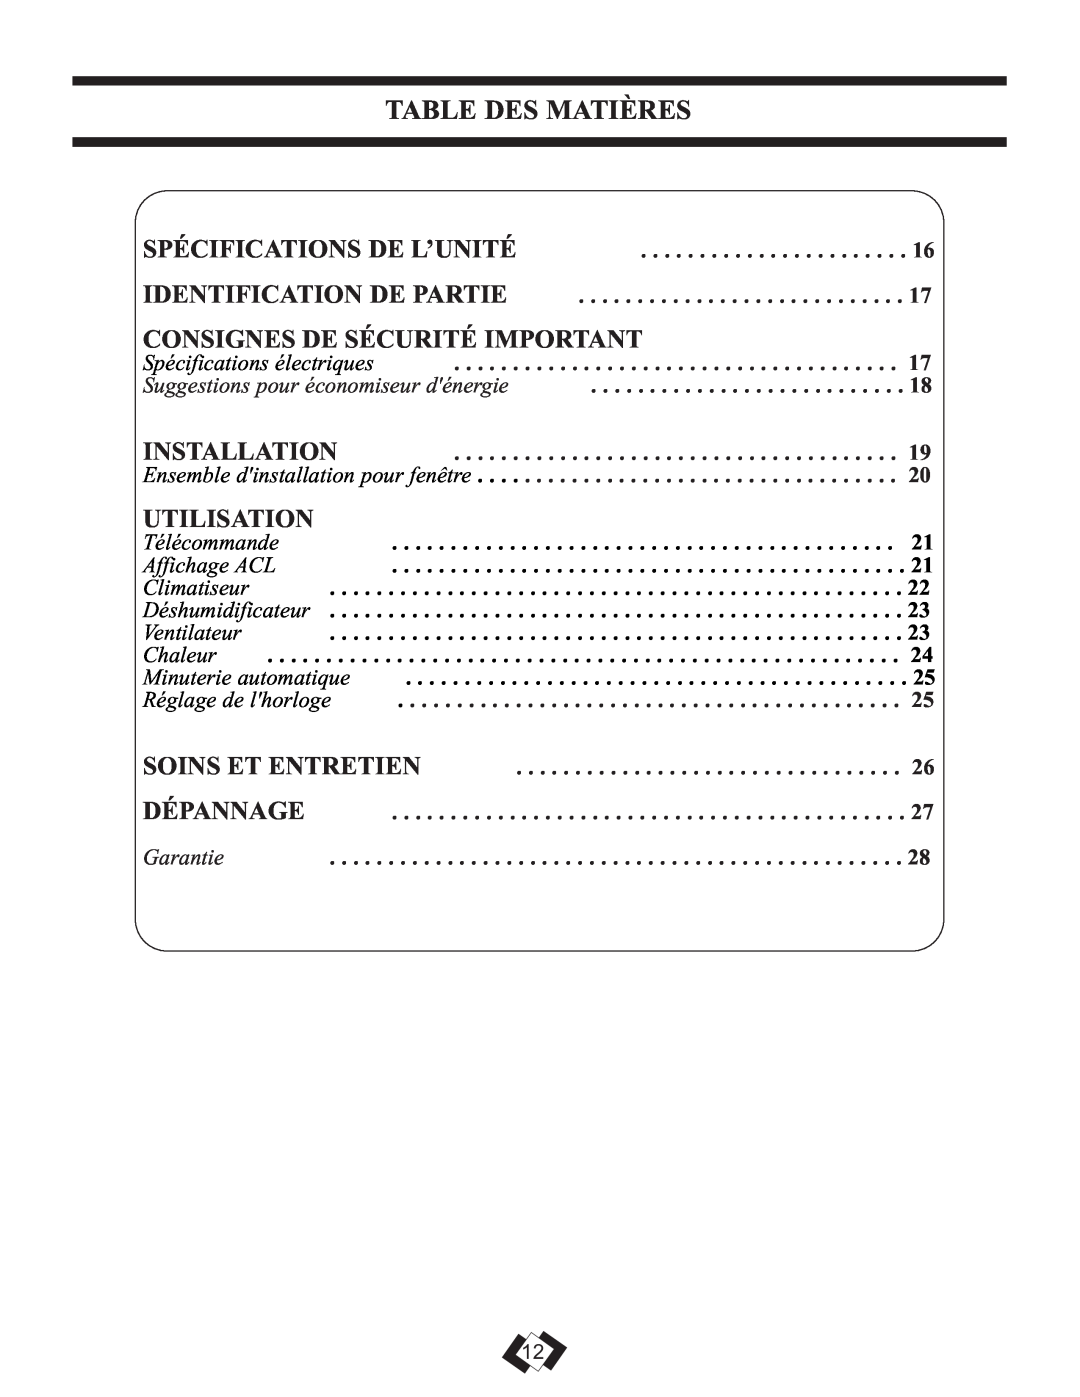 Danby DPAC 12099 Table Des Matières, Consignes De Sécurité Important, Utilisation, Spécifications De L’Unité, Installation 